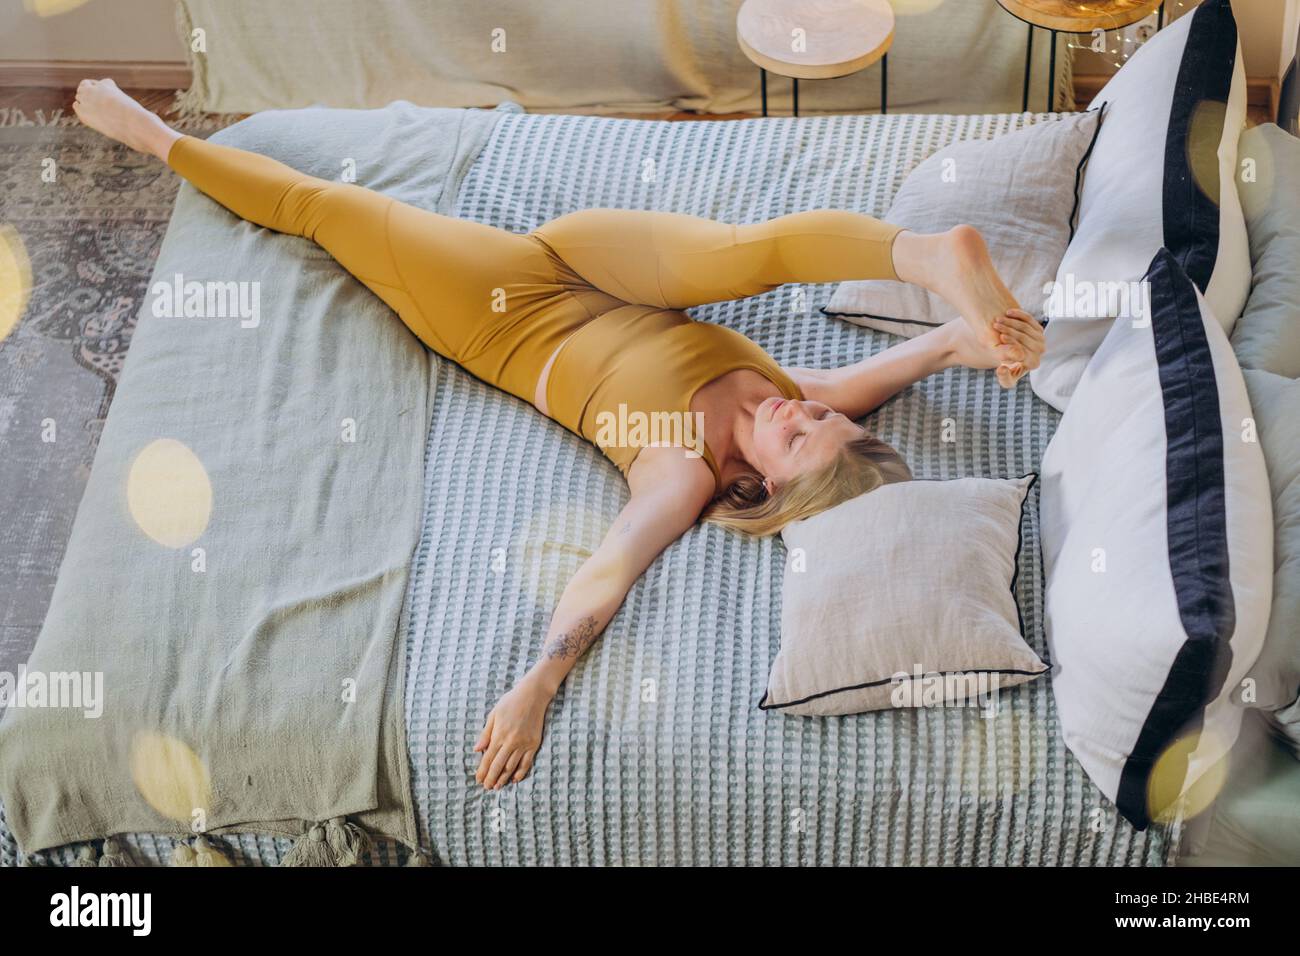 Athletische Frau mit blonden Haaren in gelber Sportswear streckt sich, spaltet sich und liegt auf einer weichen Decke, die das Bett mit Kissen aus der oberen Ansicht bedeckt Stockfoto